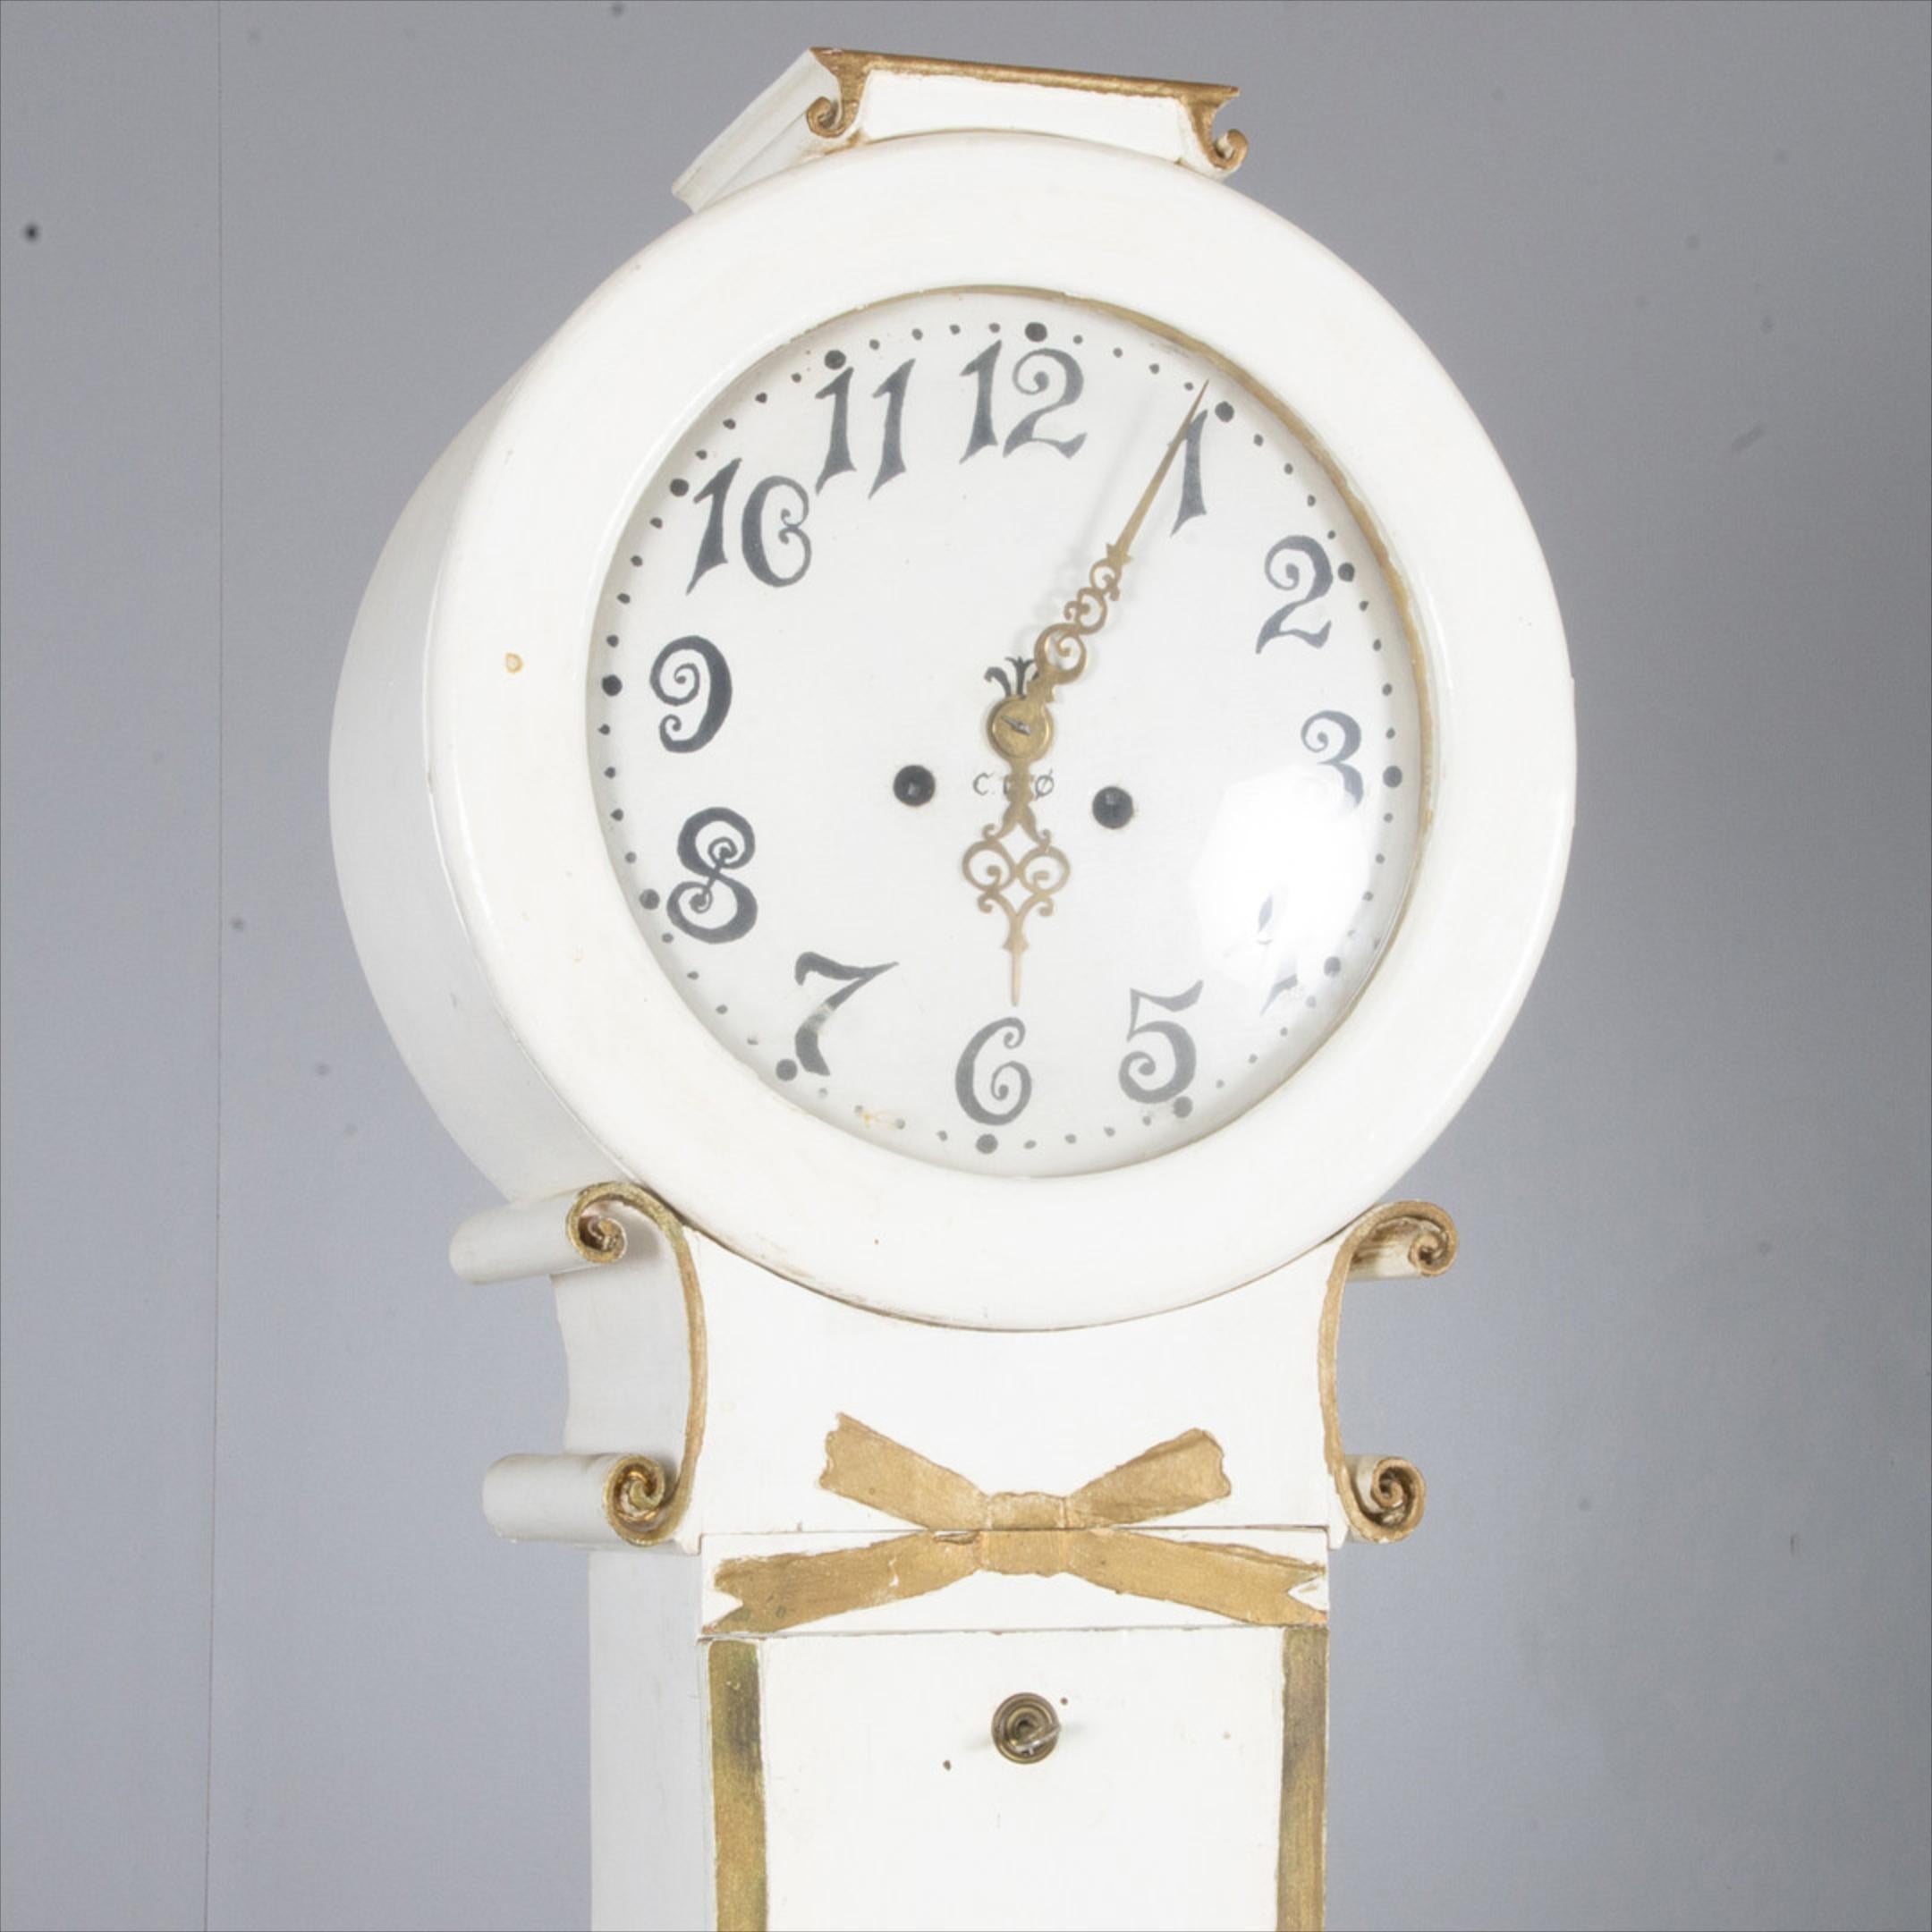 Horloge suédoise Mora ancienne de l'école Fryksdall, finie en peinture blanche avec des détails dorés sur les bords.

Cette horloge Mora inhabituelle présente d'intéressantes volutes au niveau du col, avec un motif de ruban au centre.

Il mesure 207